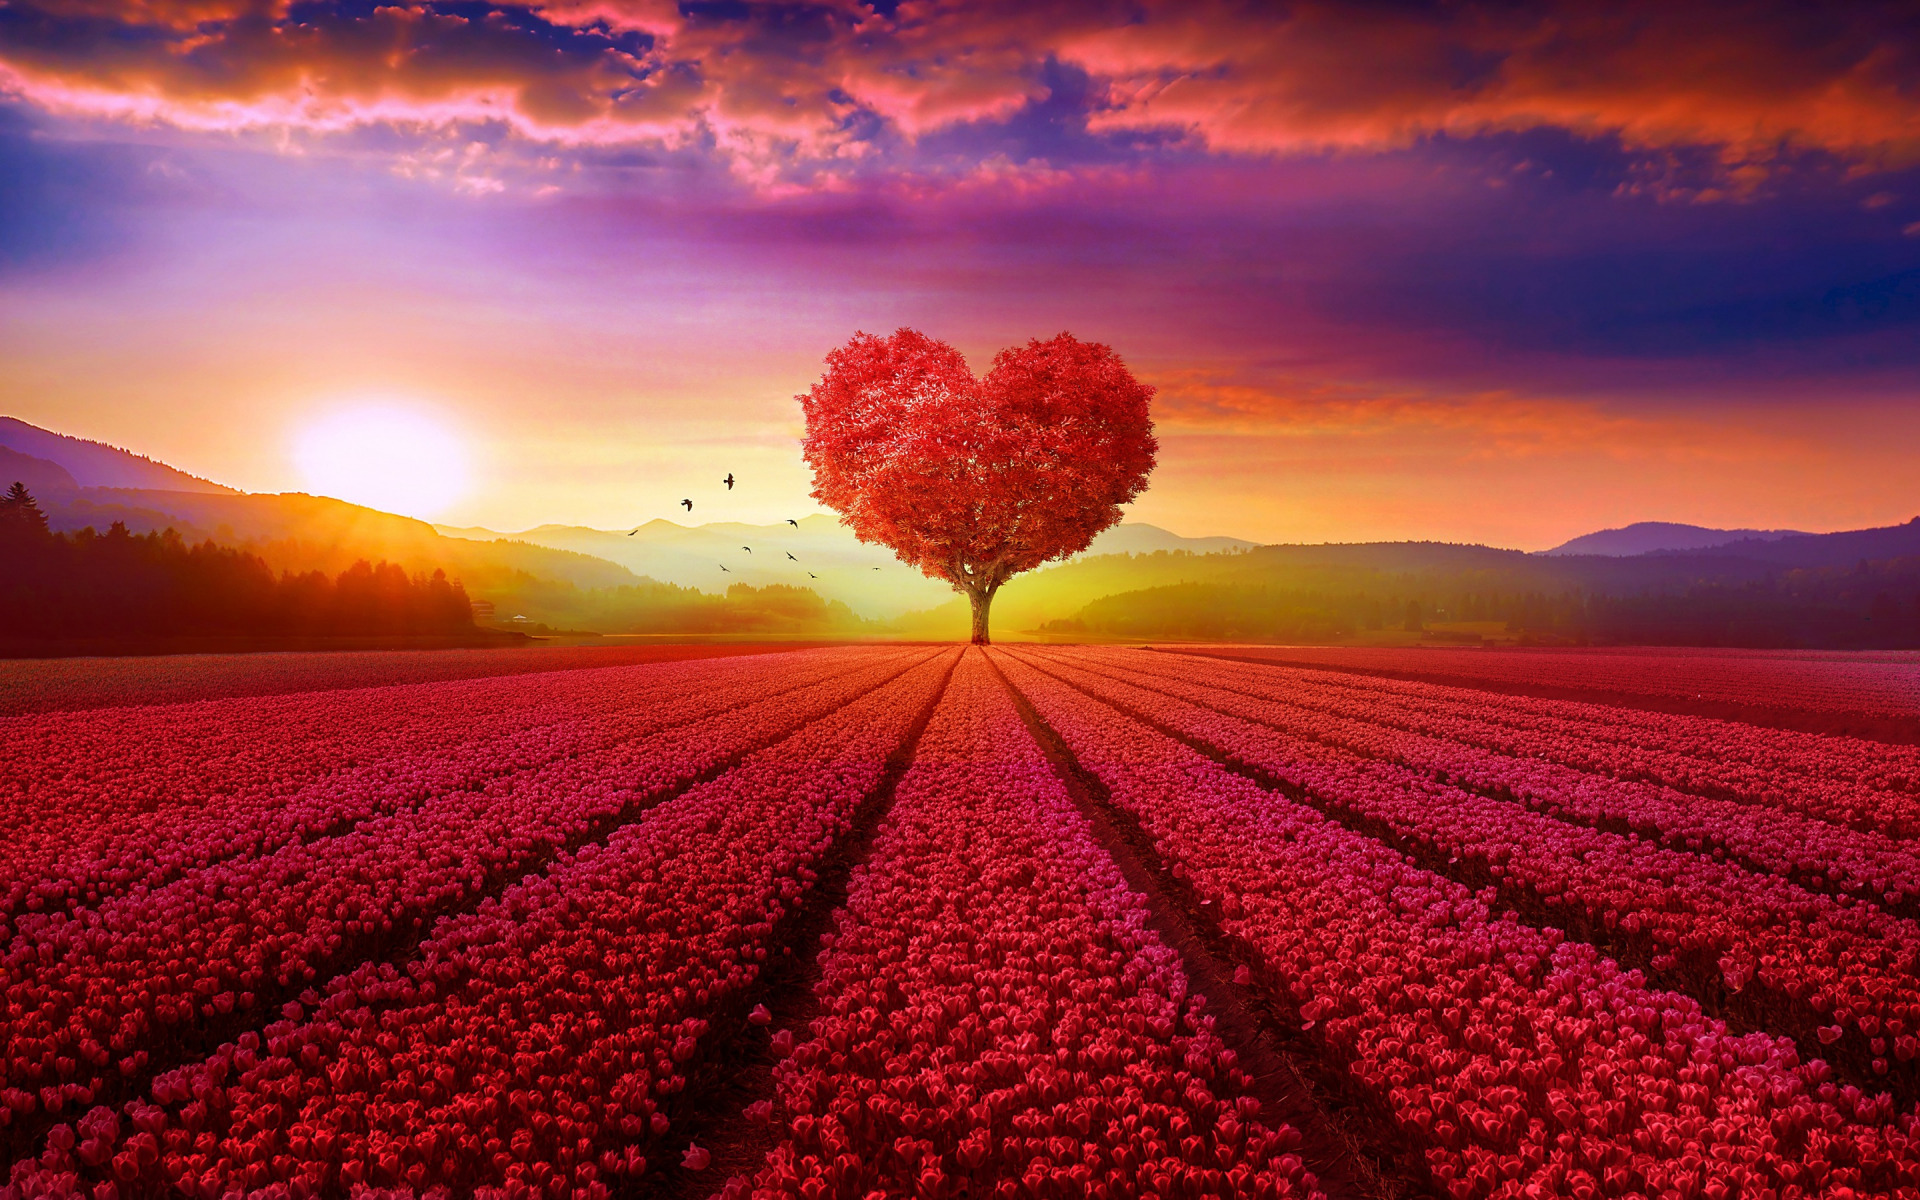 Chào đón hình nền trái tim đỏ mới nhất với hàng ngàn gam màu đẹp nhất. Nó sẽ đưa bạn đến một không gian tràn đầy tình yêu và xúc cảm. Khi nhìn vào hình nền trái tim đỏ mới nhất, bạn sẽ cảm nhận sức mạnh của tình yêu tràn ngập khắp không gian.